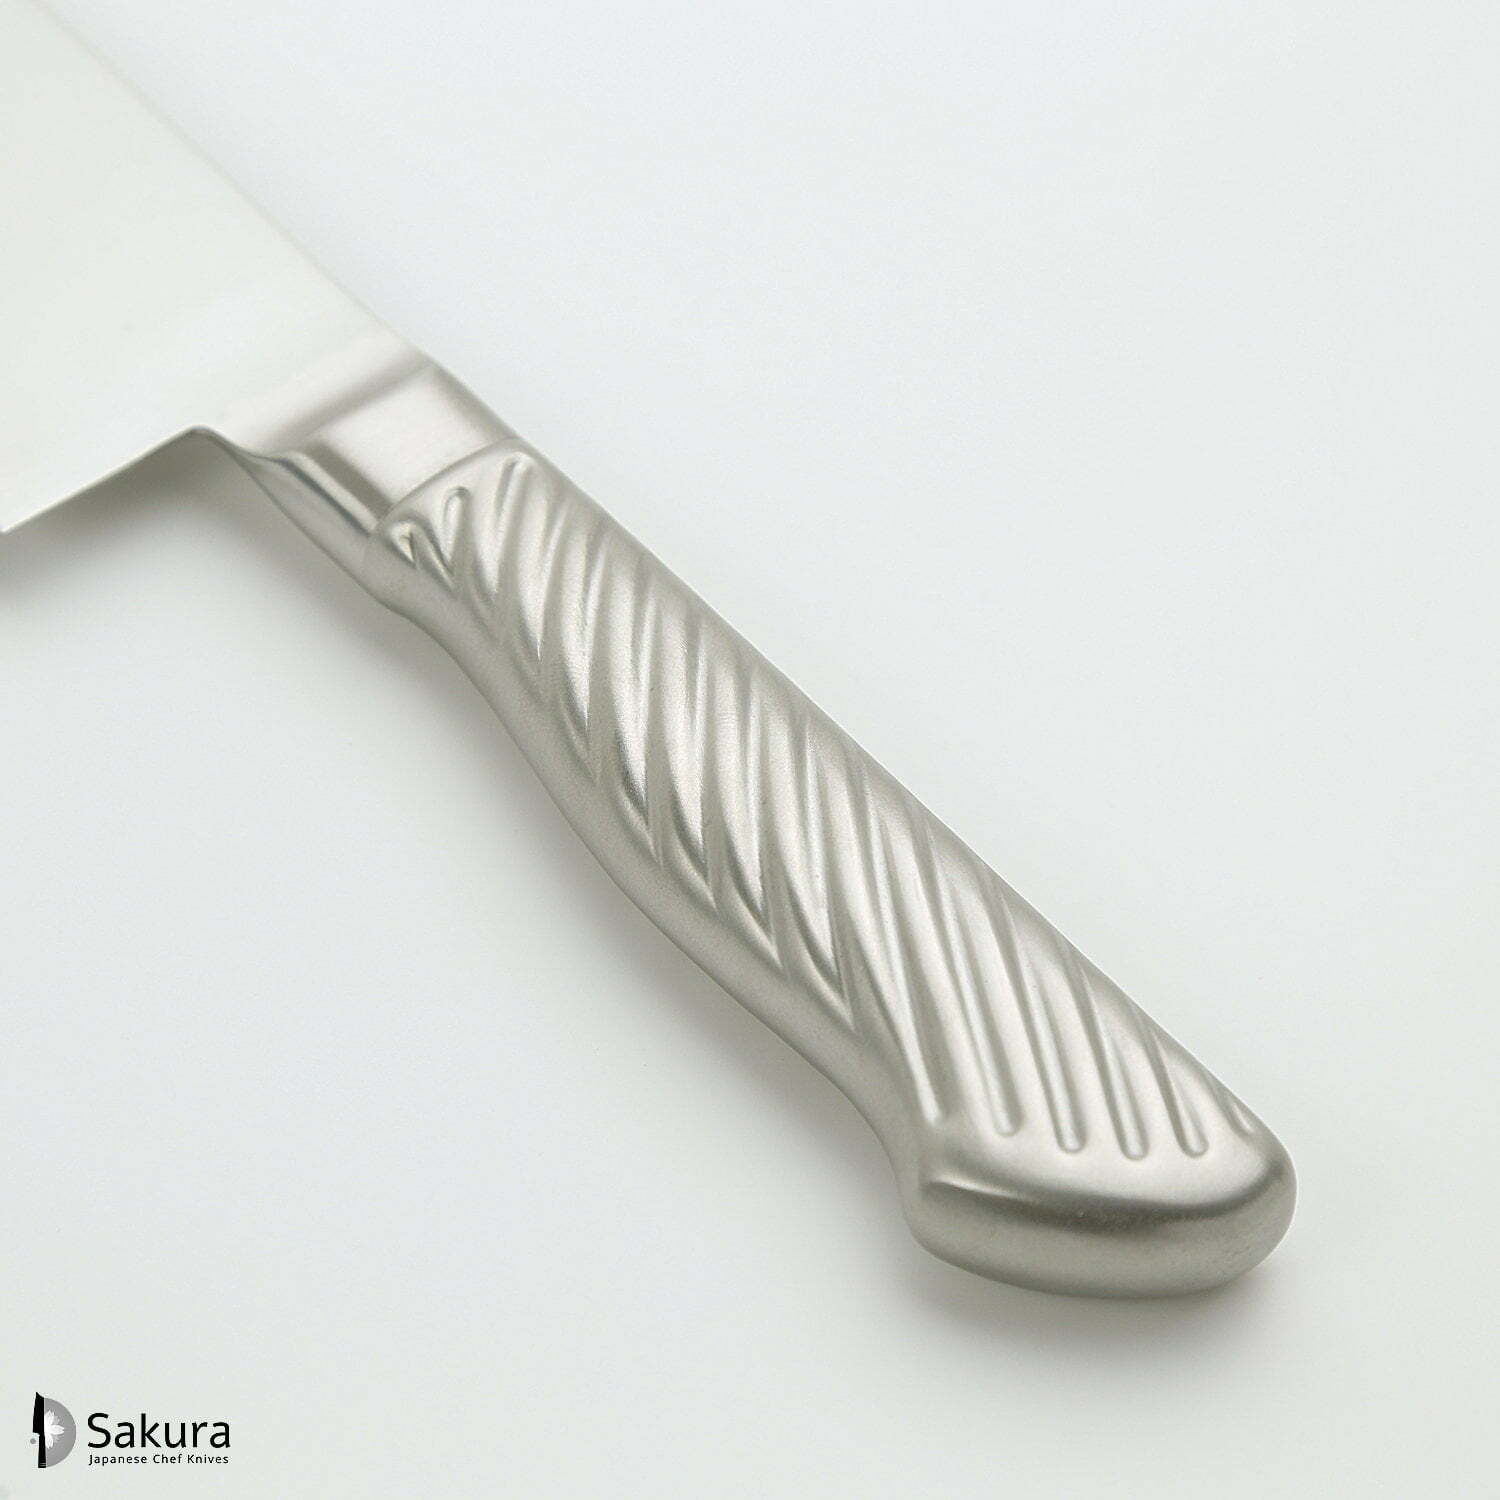 סכין שף רב-תכליתית גִּיוּטוֹ 180מ״מ מחוזקת 3 שכבות: פלדת פחמן יפנית VG-10 עטופה פלדת אל-חלד גימור מט מלוטש טוג׳ירו יפן